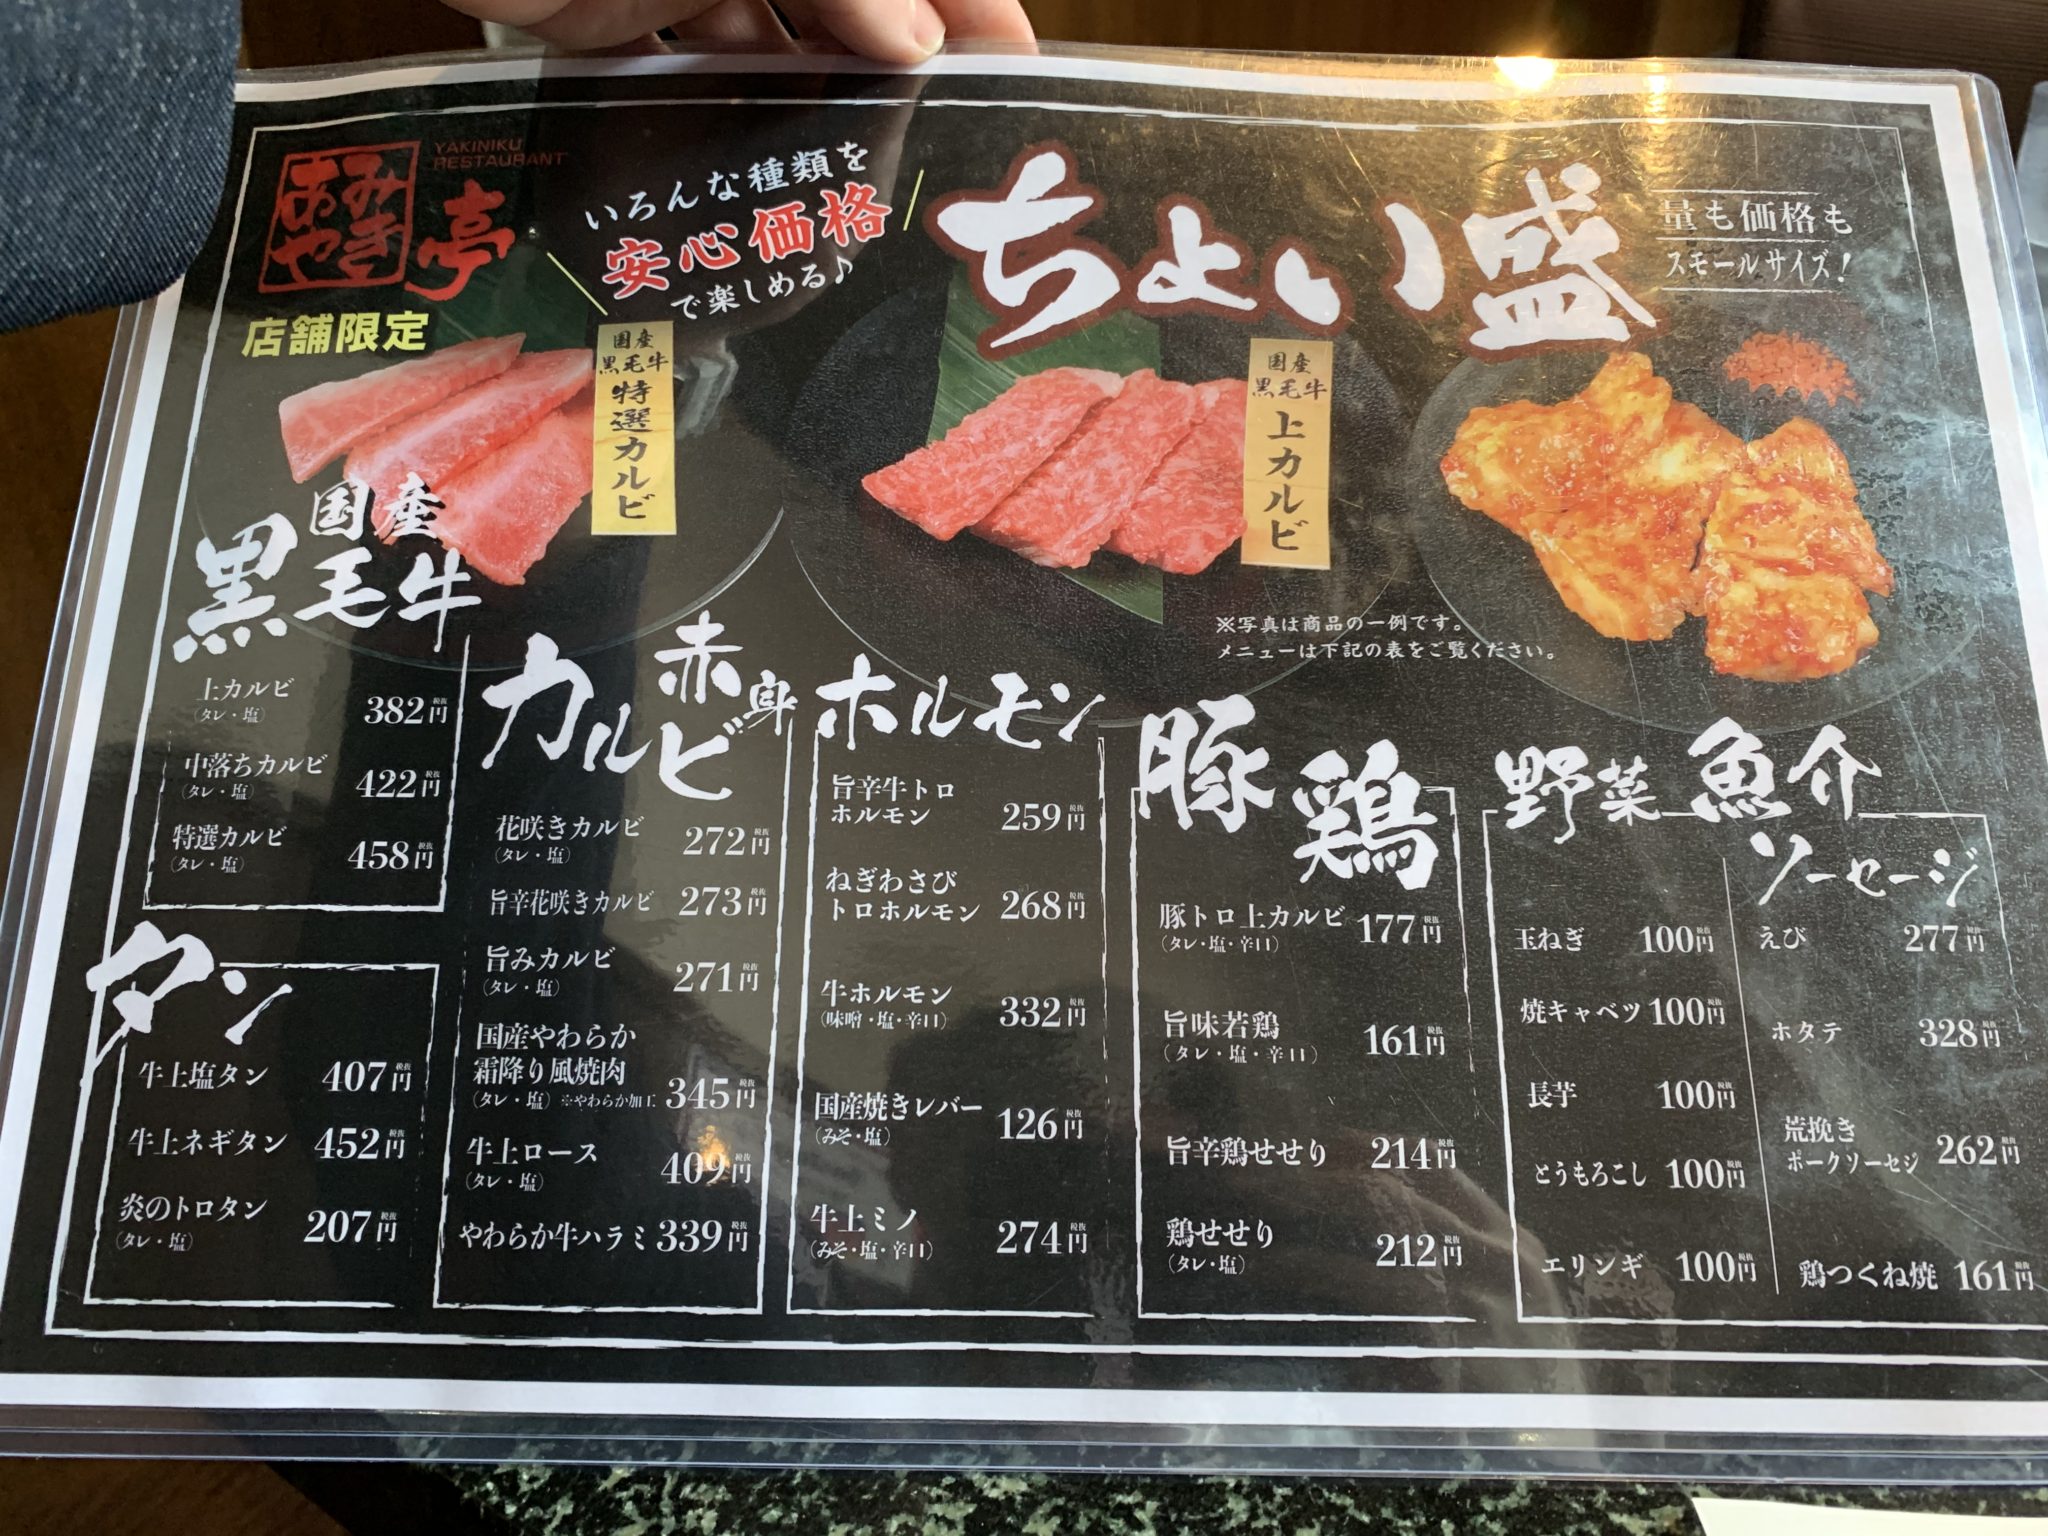 【あみやき亭】のランチを食べてきたよ！！ボリュームがあり1000円で食べれるからオススメ！ | DA-LIFEブログ